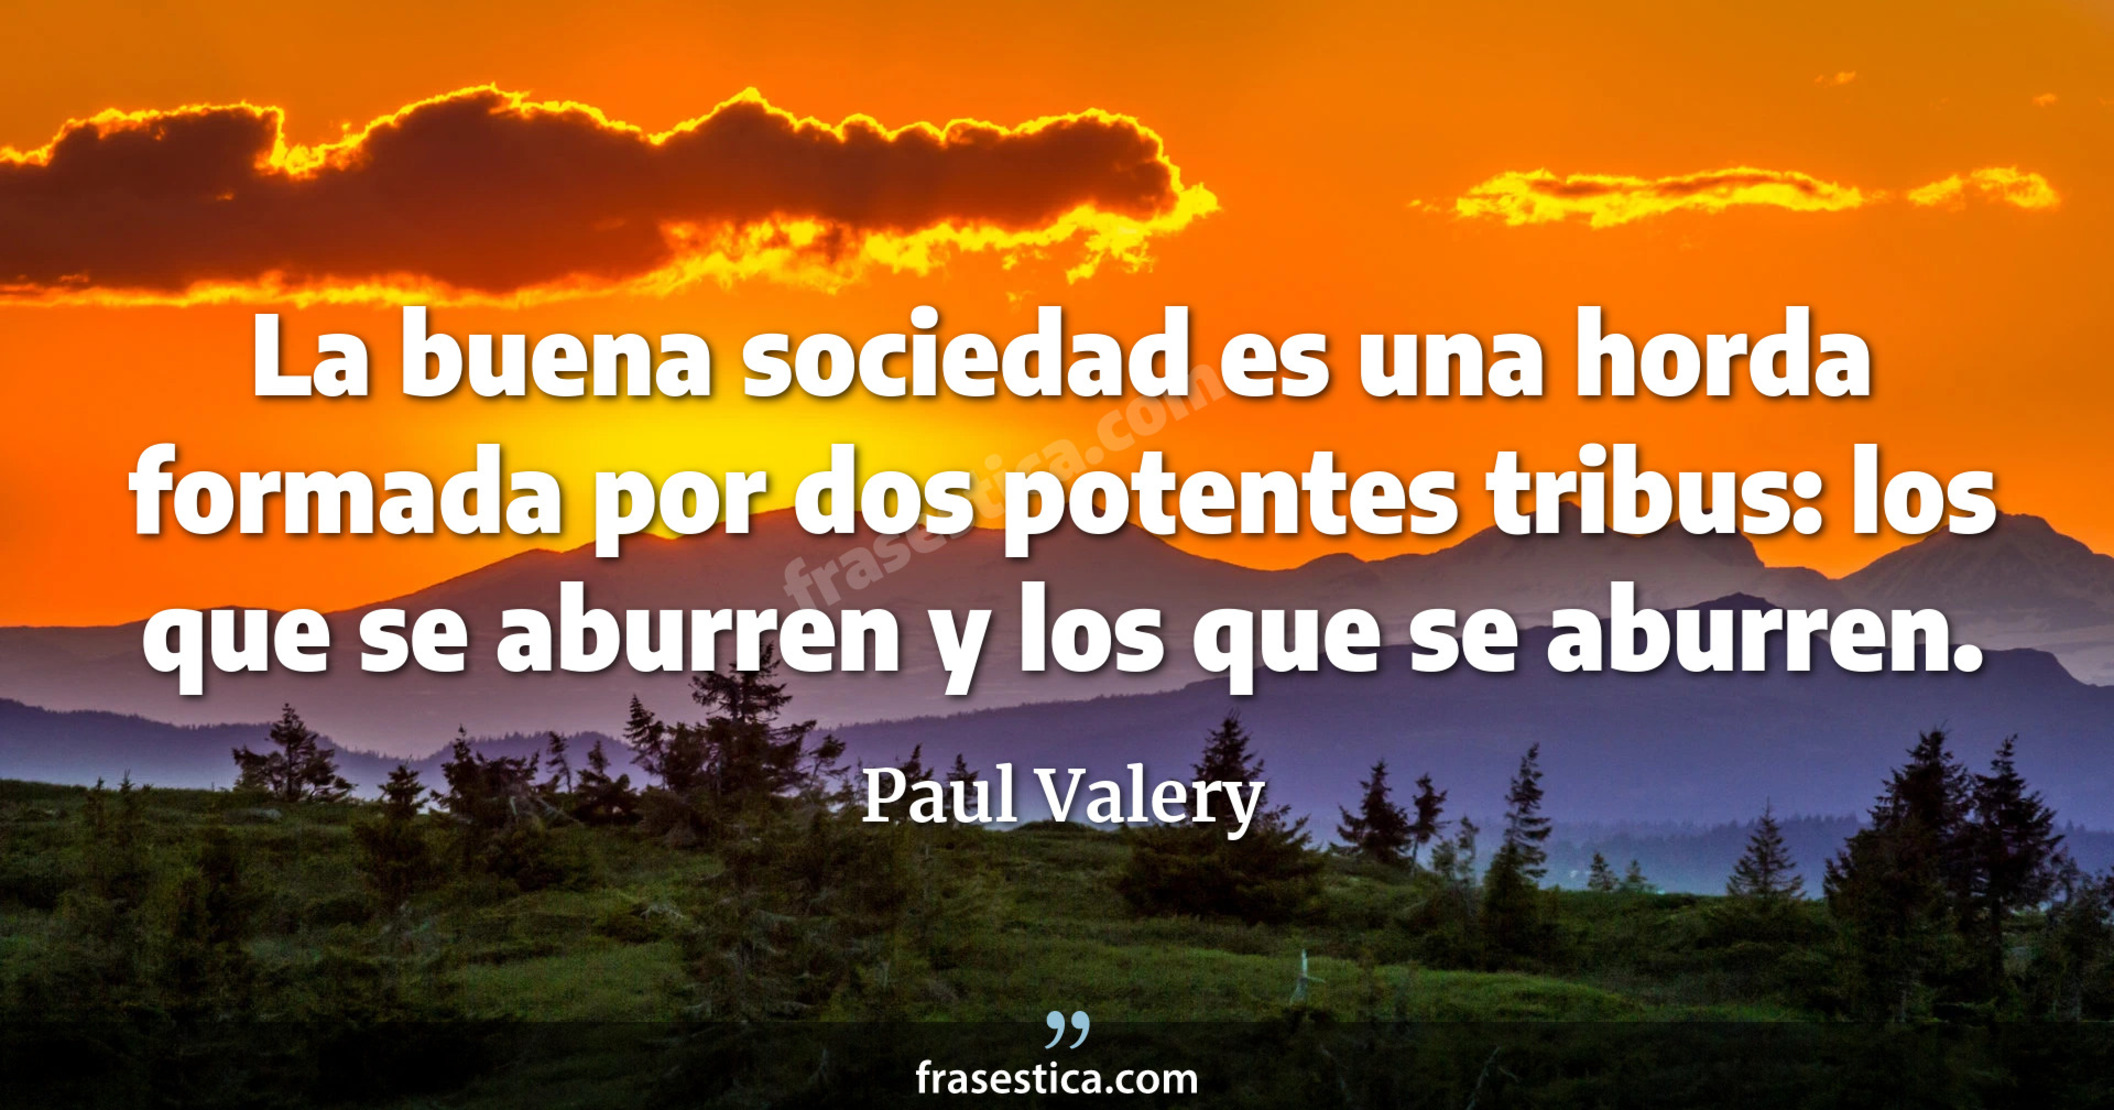 La buena sociedad es una horda formada por dos potentes tribus: los que se aburren y los que se aburren. - Paul Valery